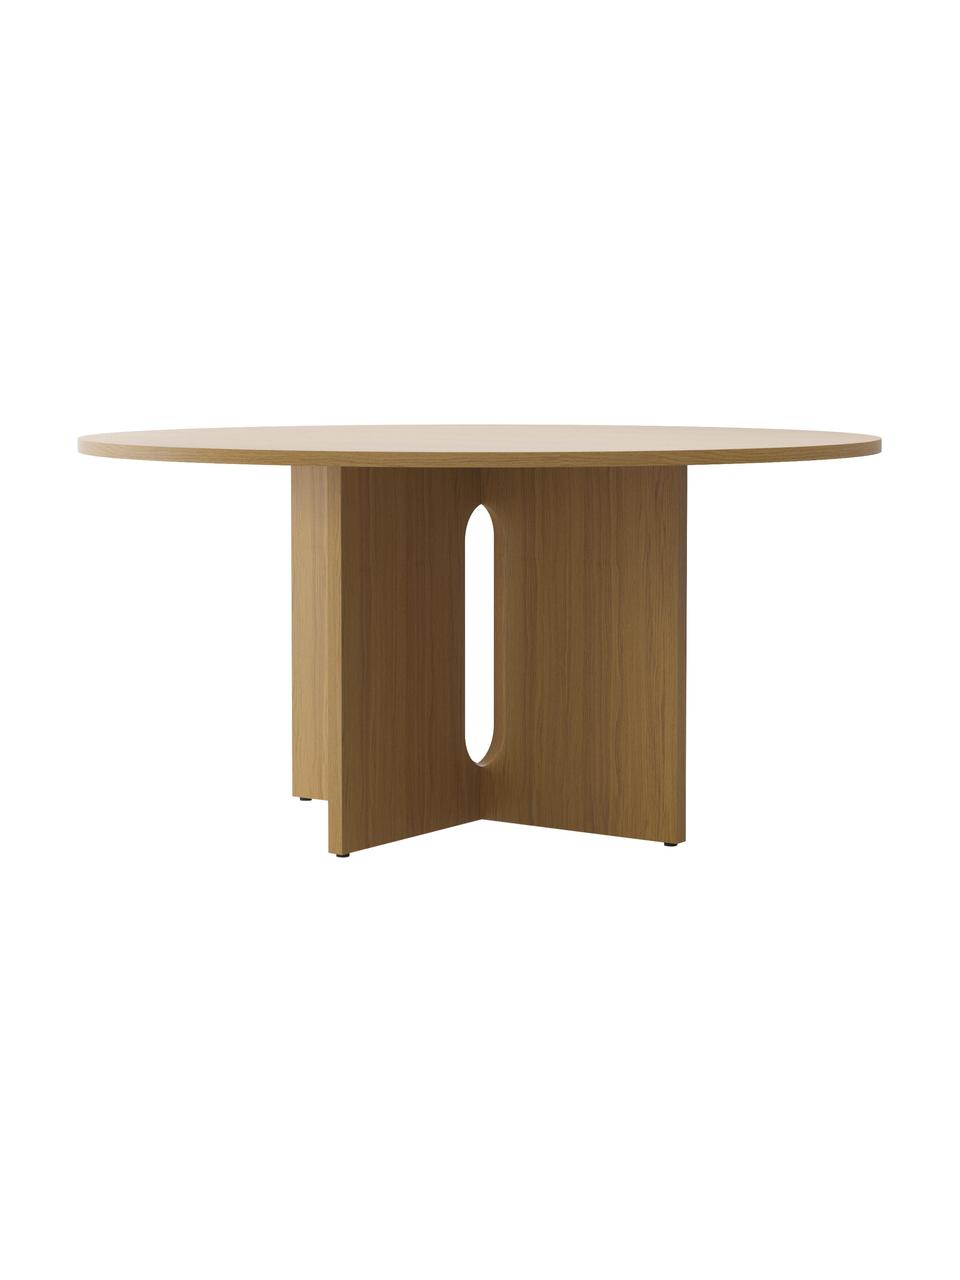 Kulatý jídelní stůl s dubovou dýhou Androgyne, různé velikosti, MDF deska (dřevovláknitá deska střední hustoty) s dubovou dýhou, Světlé dřevo, Ø 120 cm, V 73 cm